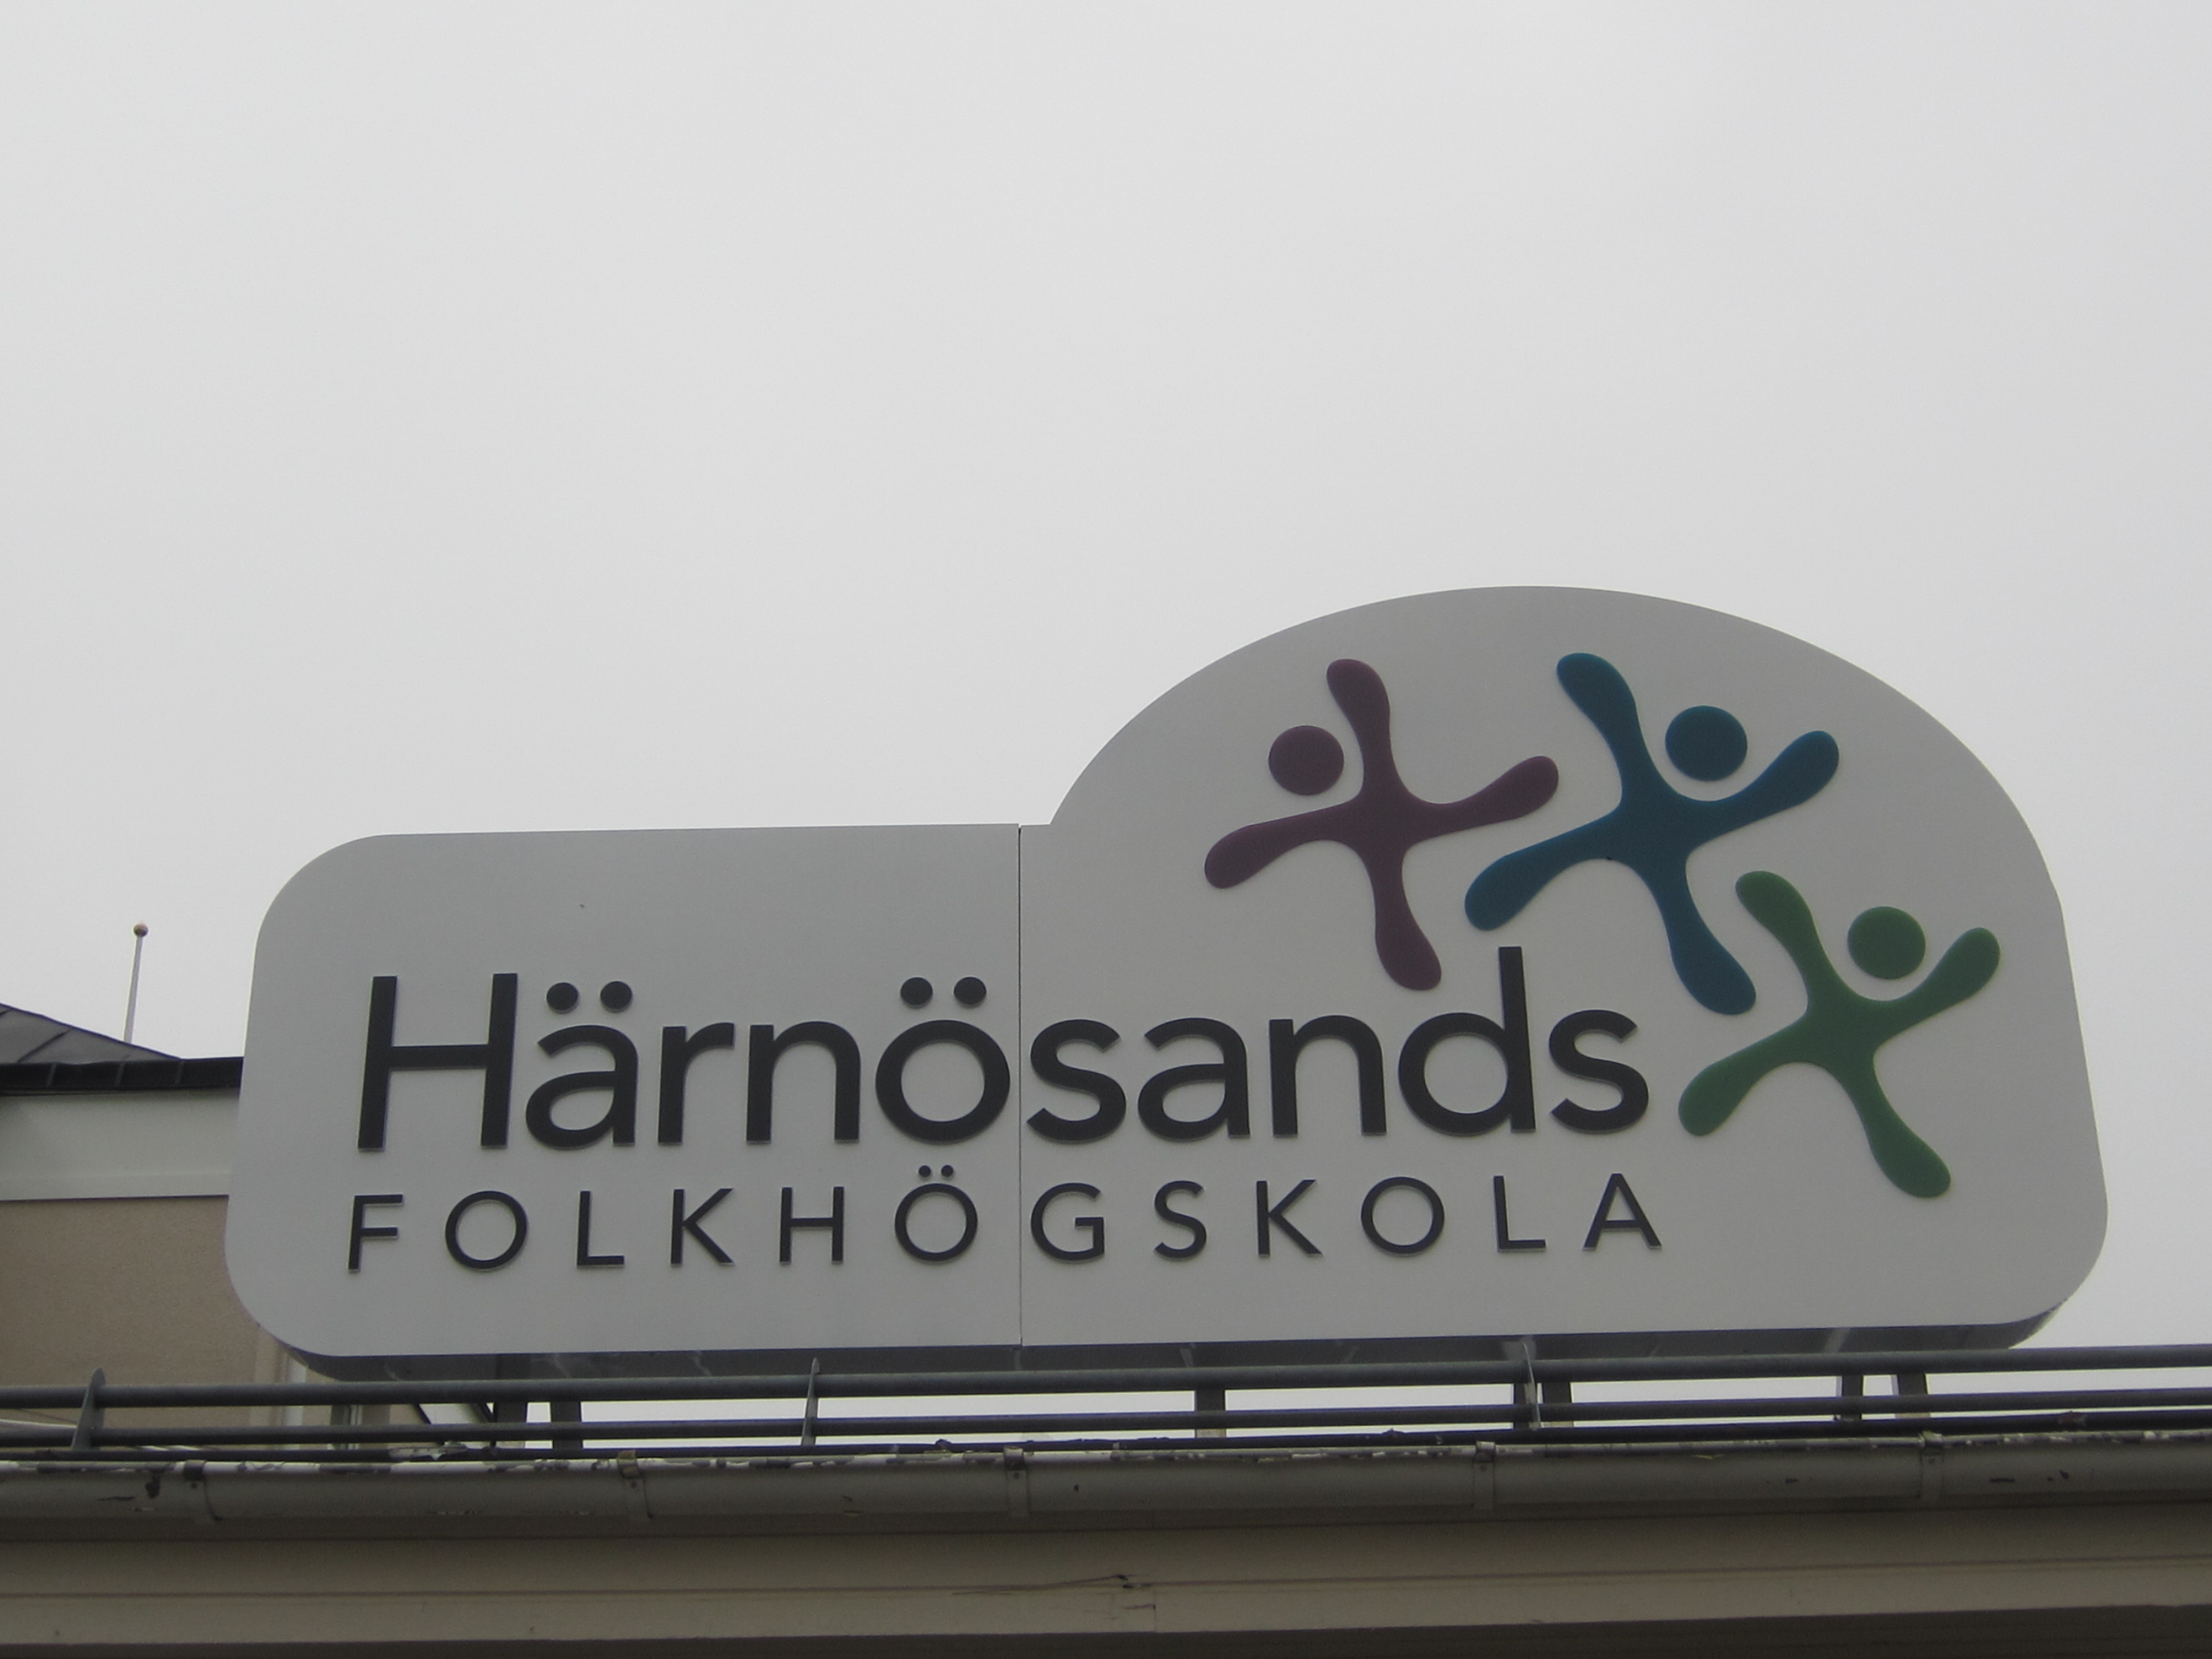 Tak skylten med texten Härnösands folkhögskola tonar upp sig mot en gråmulen himmel